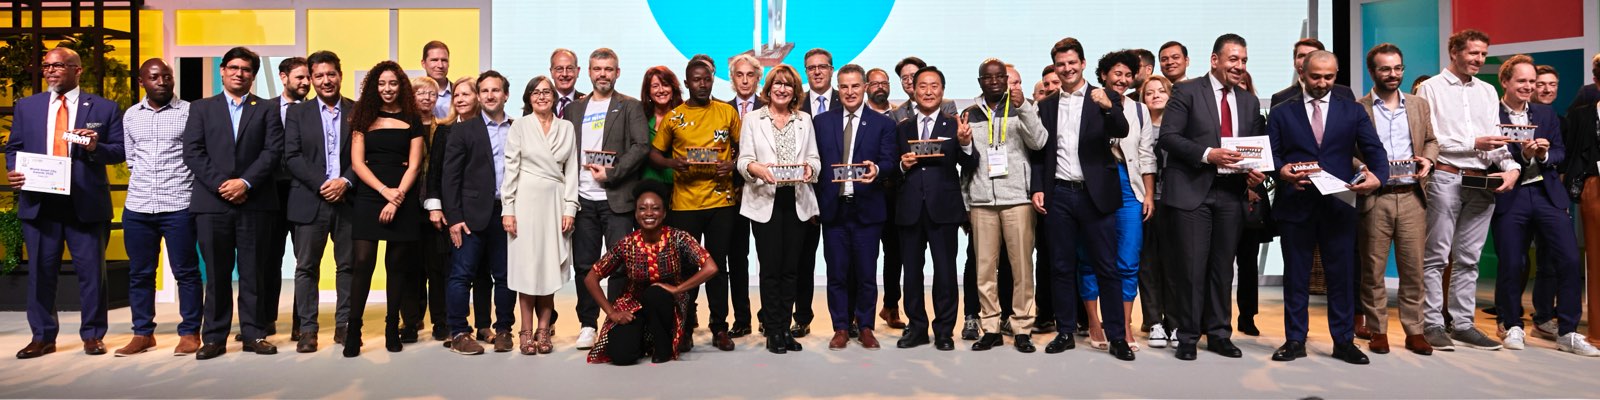 Ganadores de los World Smart City Awards 2022. La convocatoria recibió 337 propuestas de alto nivel procedentes de 60 países